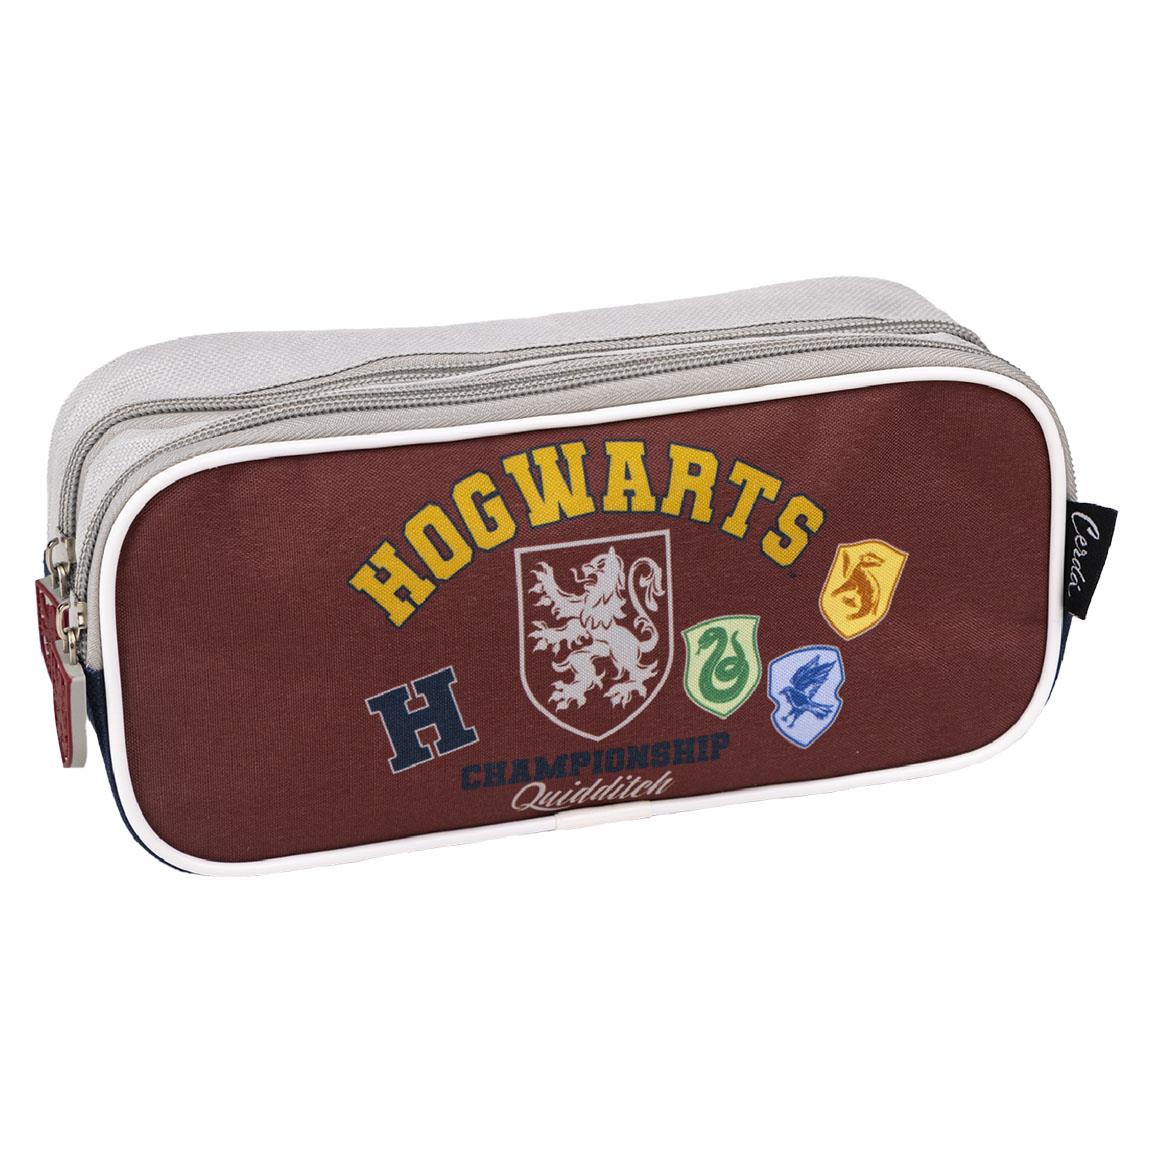 Trousse 2 compartiments Hogwarts Harry Potter 2700000581 1